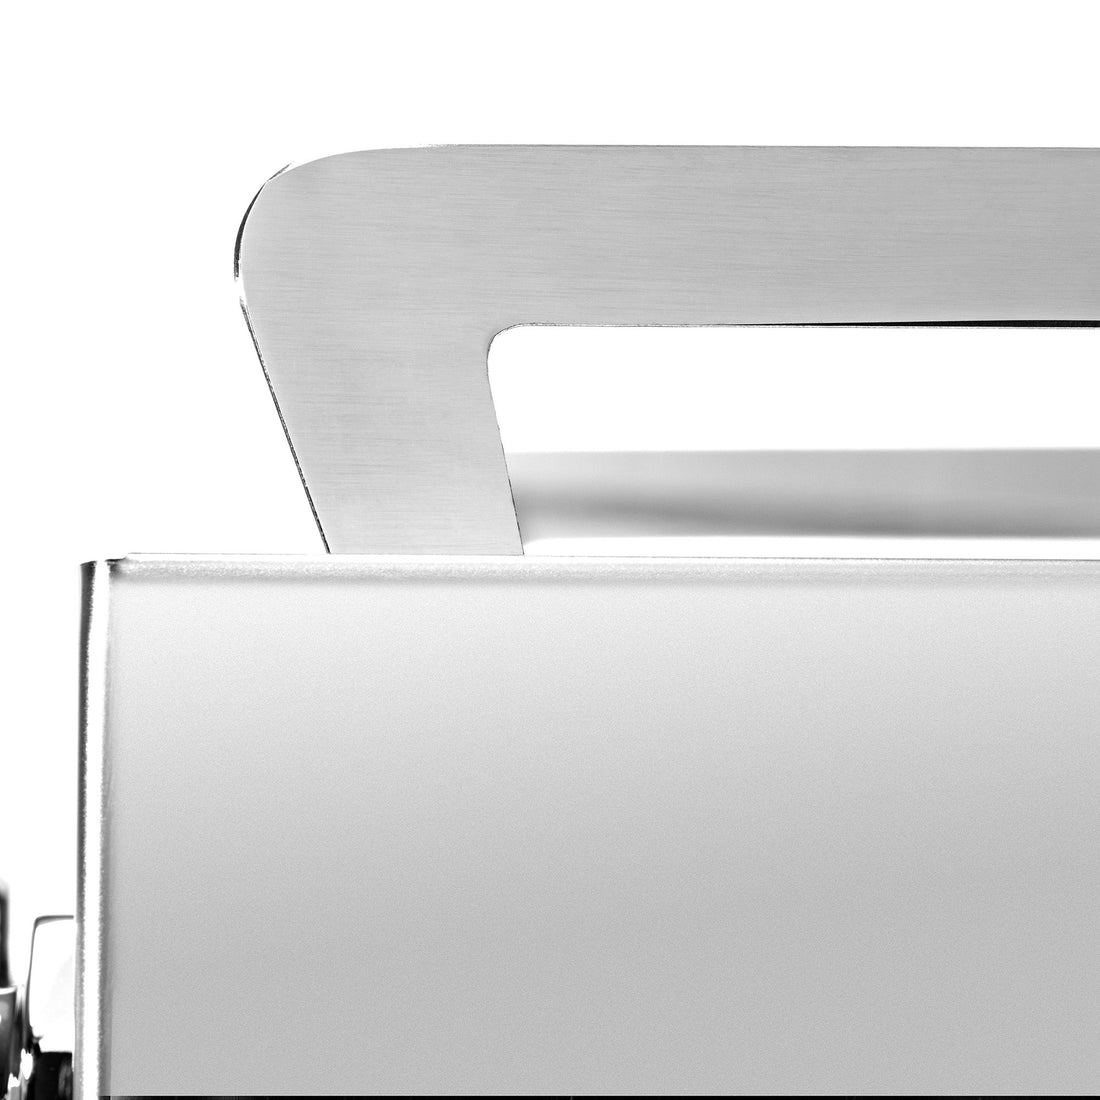 Profitec Pro 600 Dual Boiler Espresso Machine with Quick Steam Plus - Maple Curly Figured